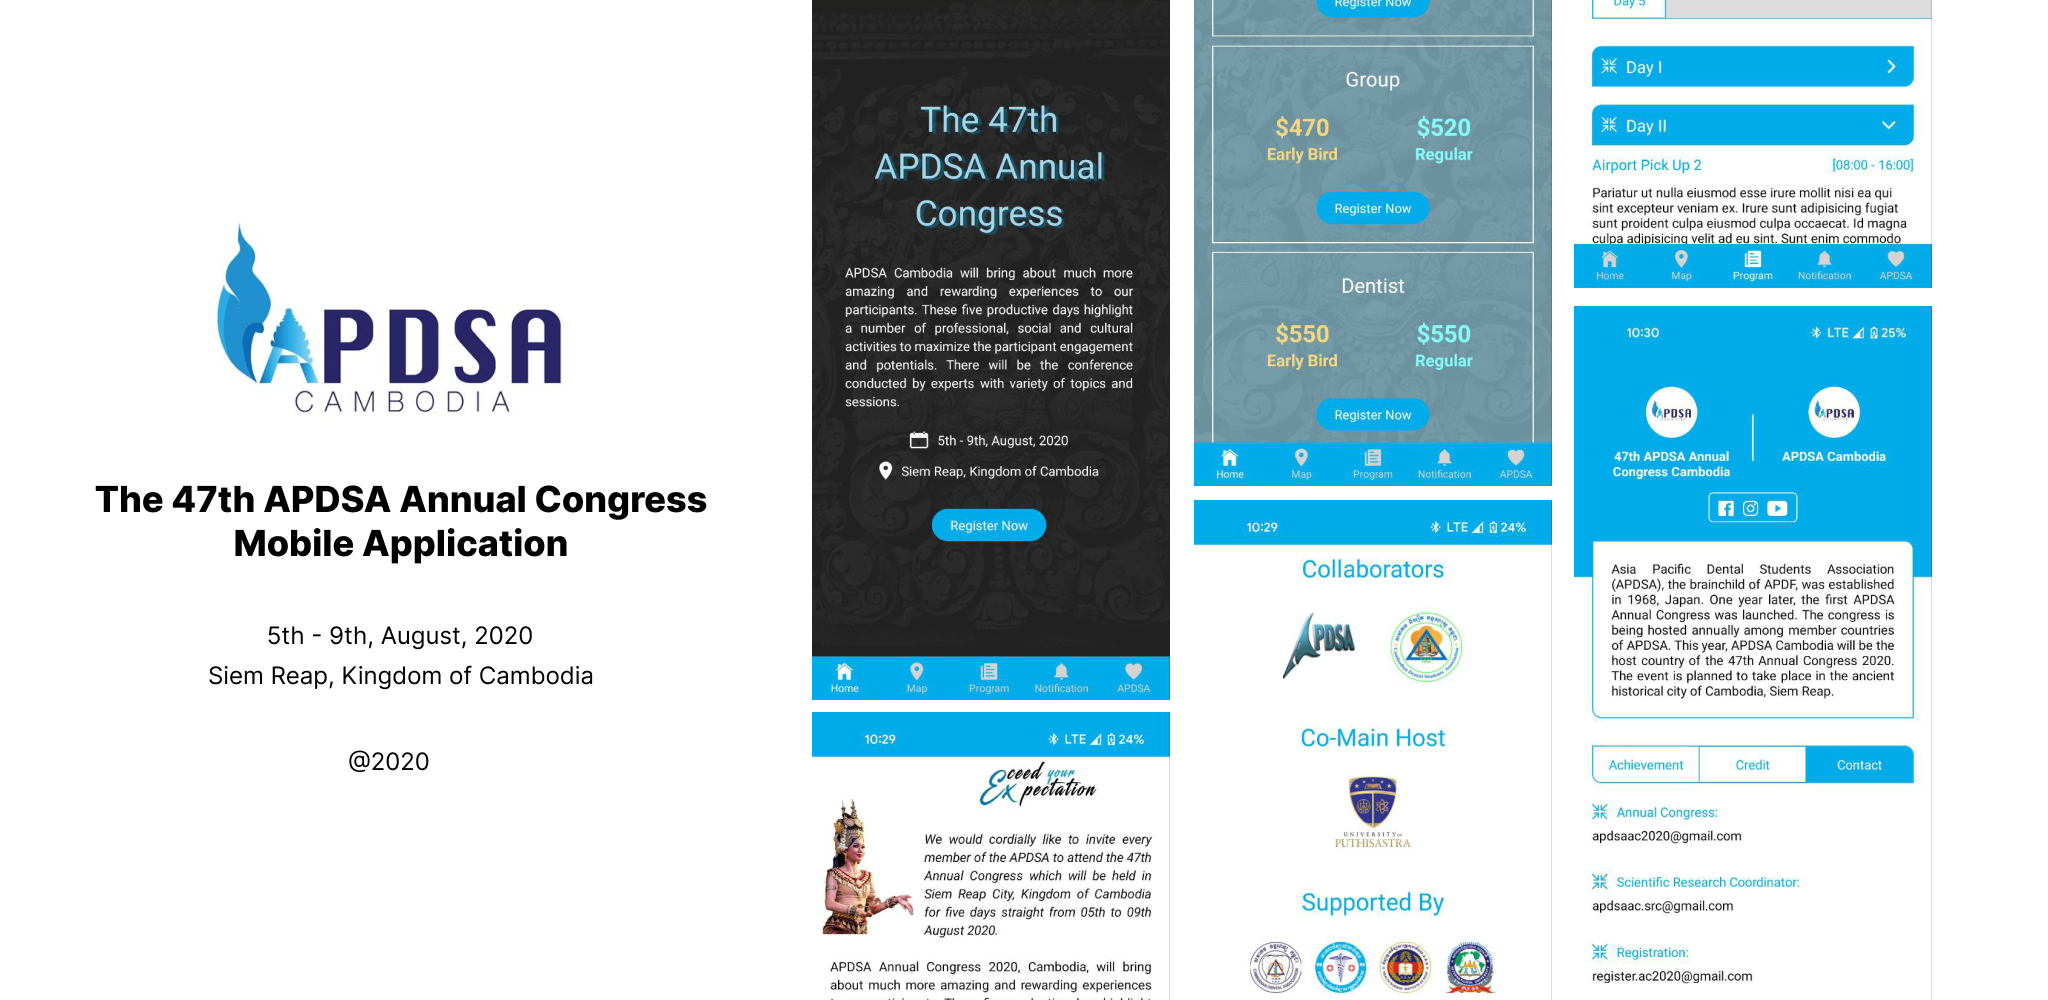 The 47th APDSA Annual Congress App's thumbnail